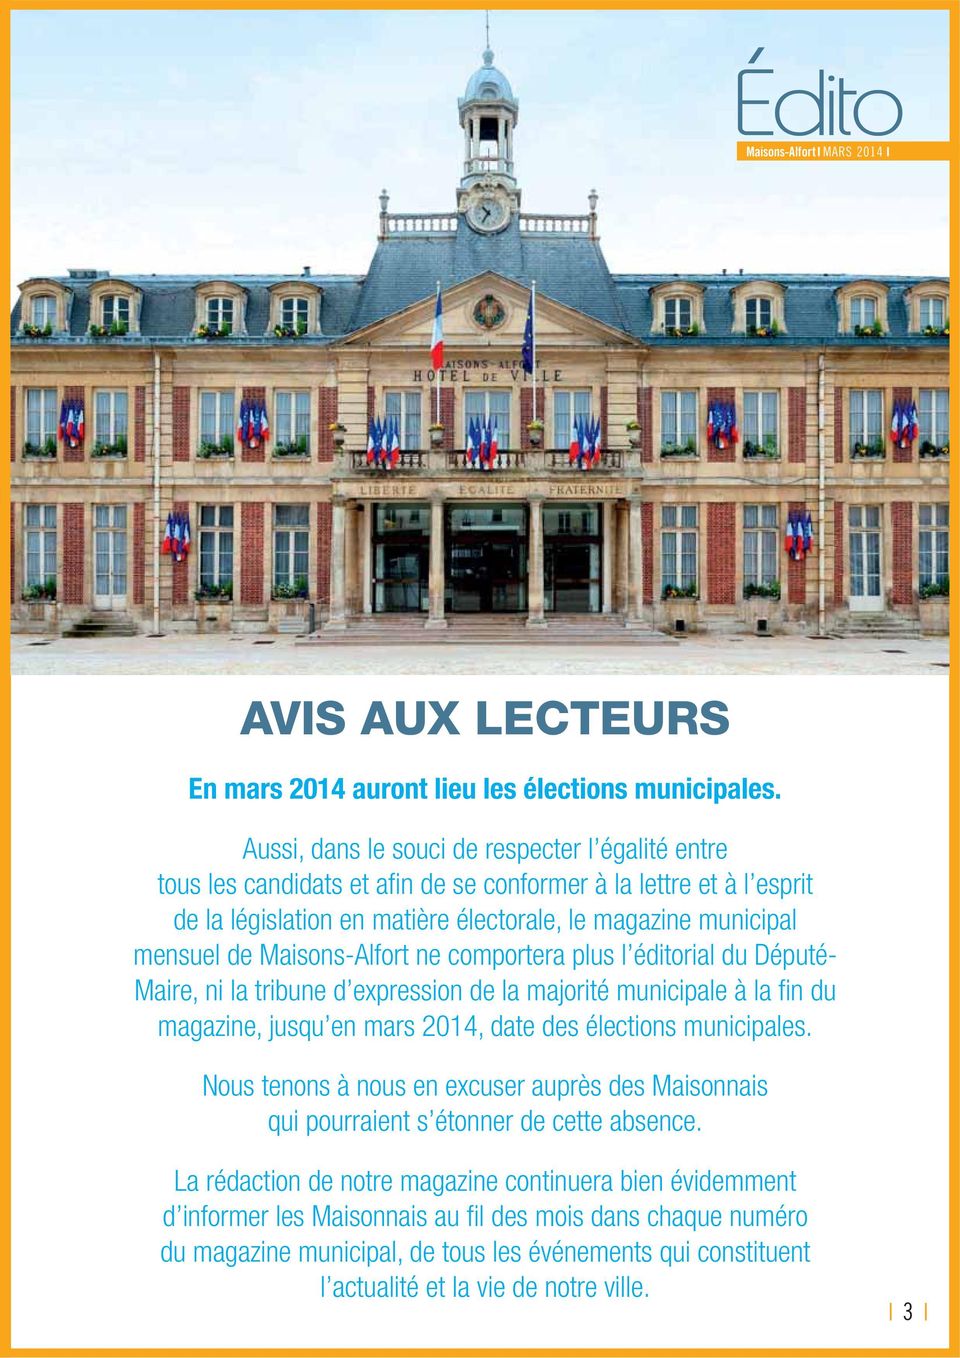 Maisons-Alfort ne comportera plus l éditorial du Député- Maire, ni la tribune d expression de la majorité municipale à la fin du magazine, jusqu en mars 2014, date des élections municipales.